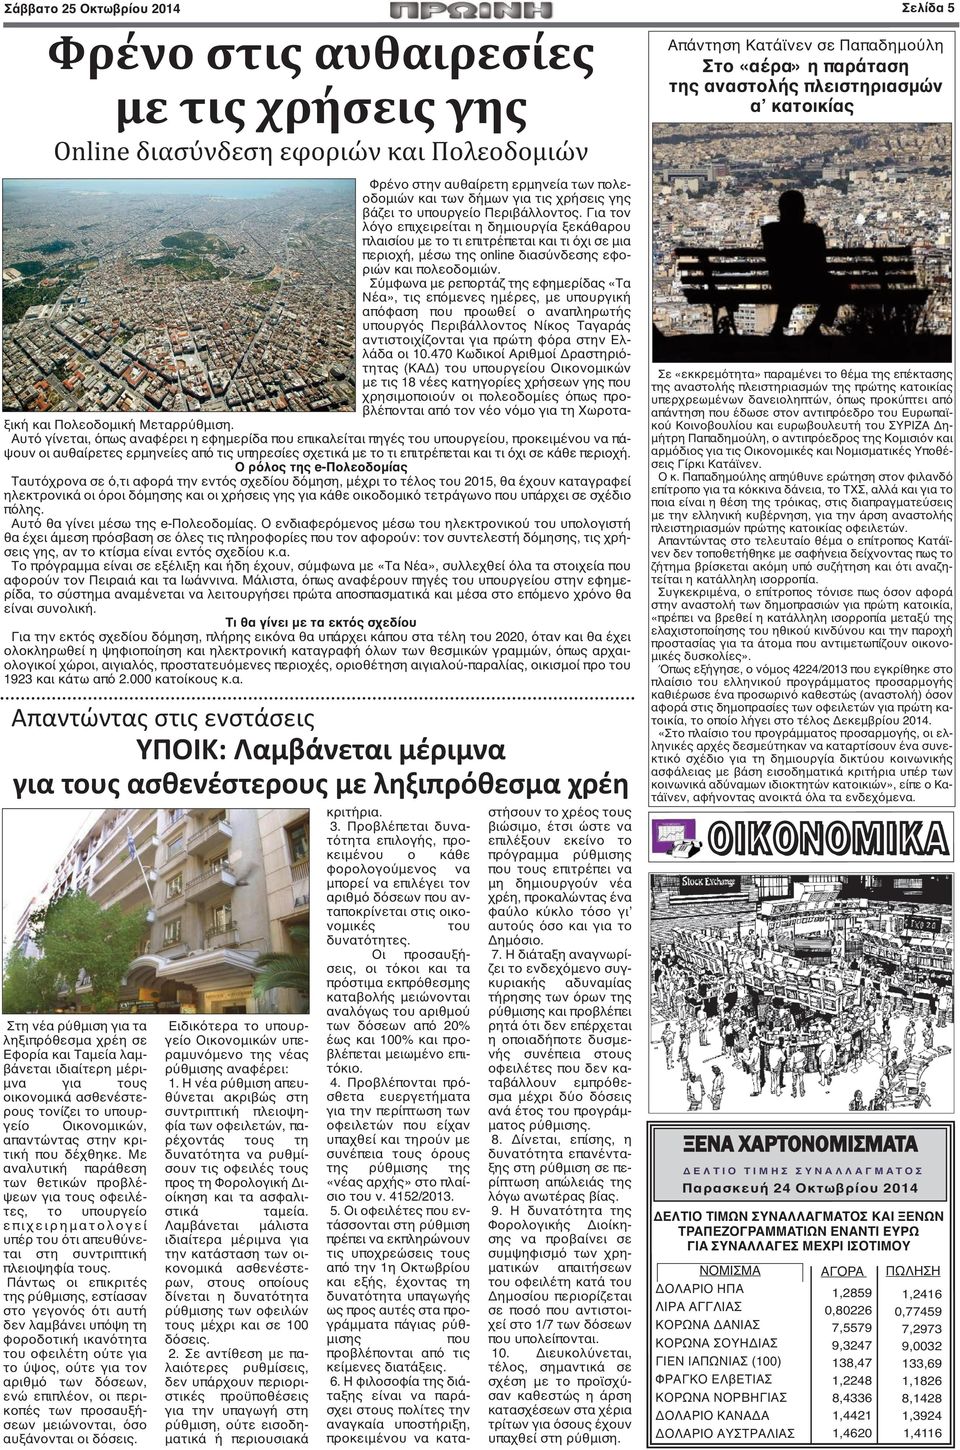 Σύμφωνα με ρεπορτάζ της εφημερίδας «Τα Νέα», τις επόμενες ημέρες, με υπουργική απόφαση που προωθεί ο αναπληρωτής υπουργός Περιβάλλοντος Νίκος Ταγαράς αντιστοιχίζονται για πρώτη φόρα στην Ελλάδα οι 10.